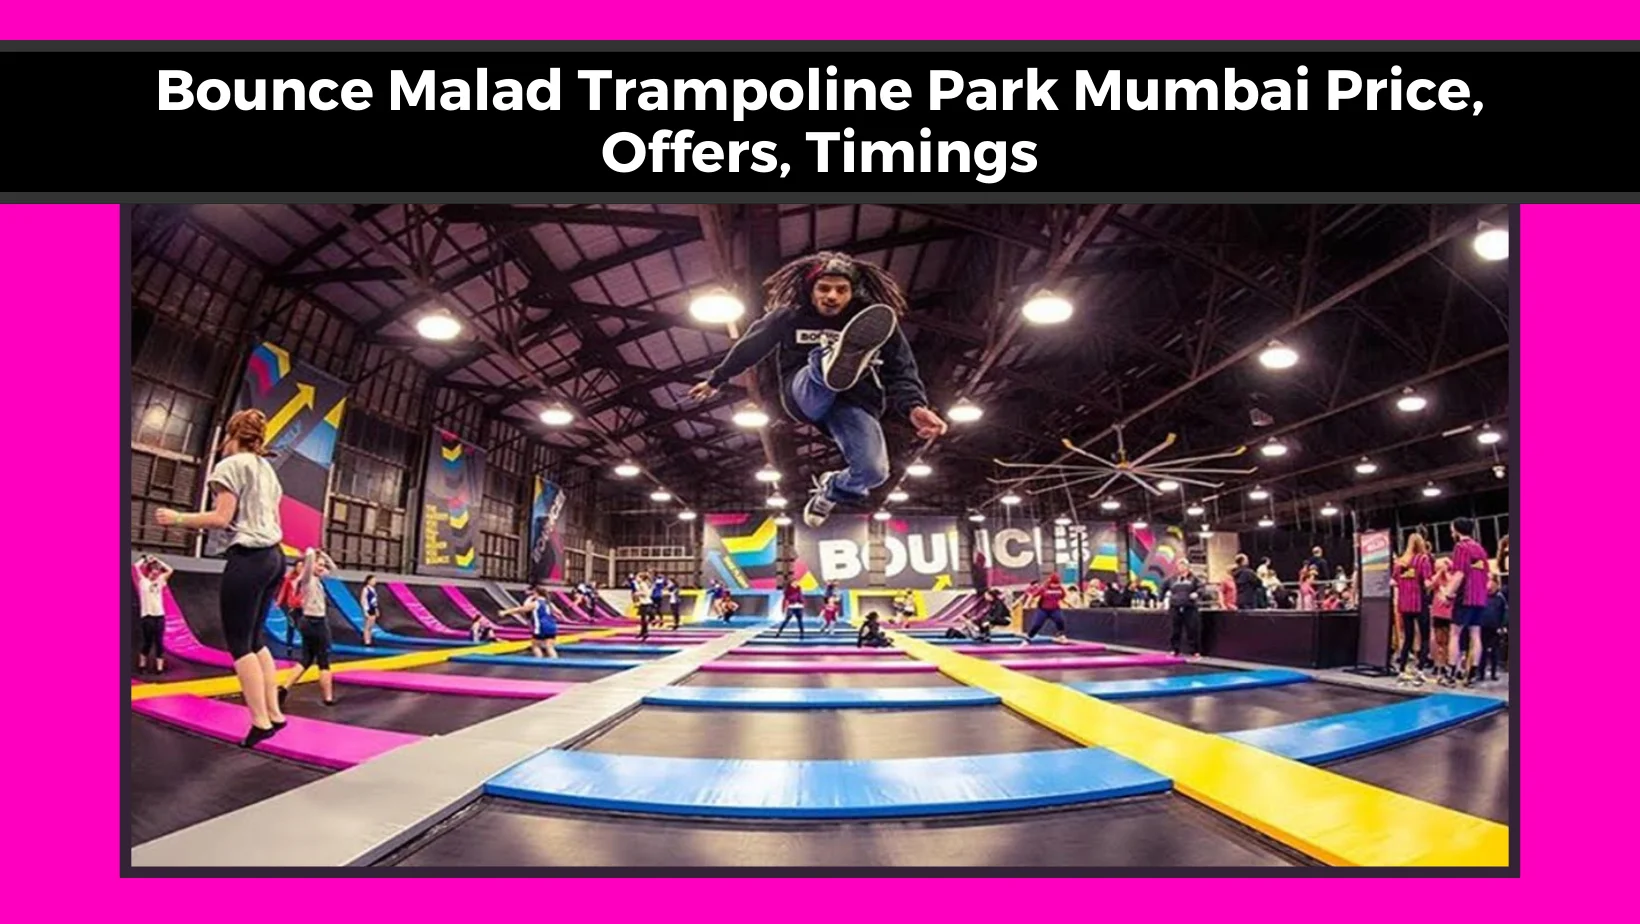 Bounce Malad Trampoline Park Mumbai Price, Offers, Timings